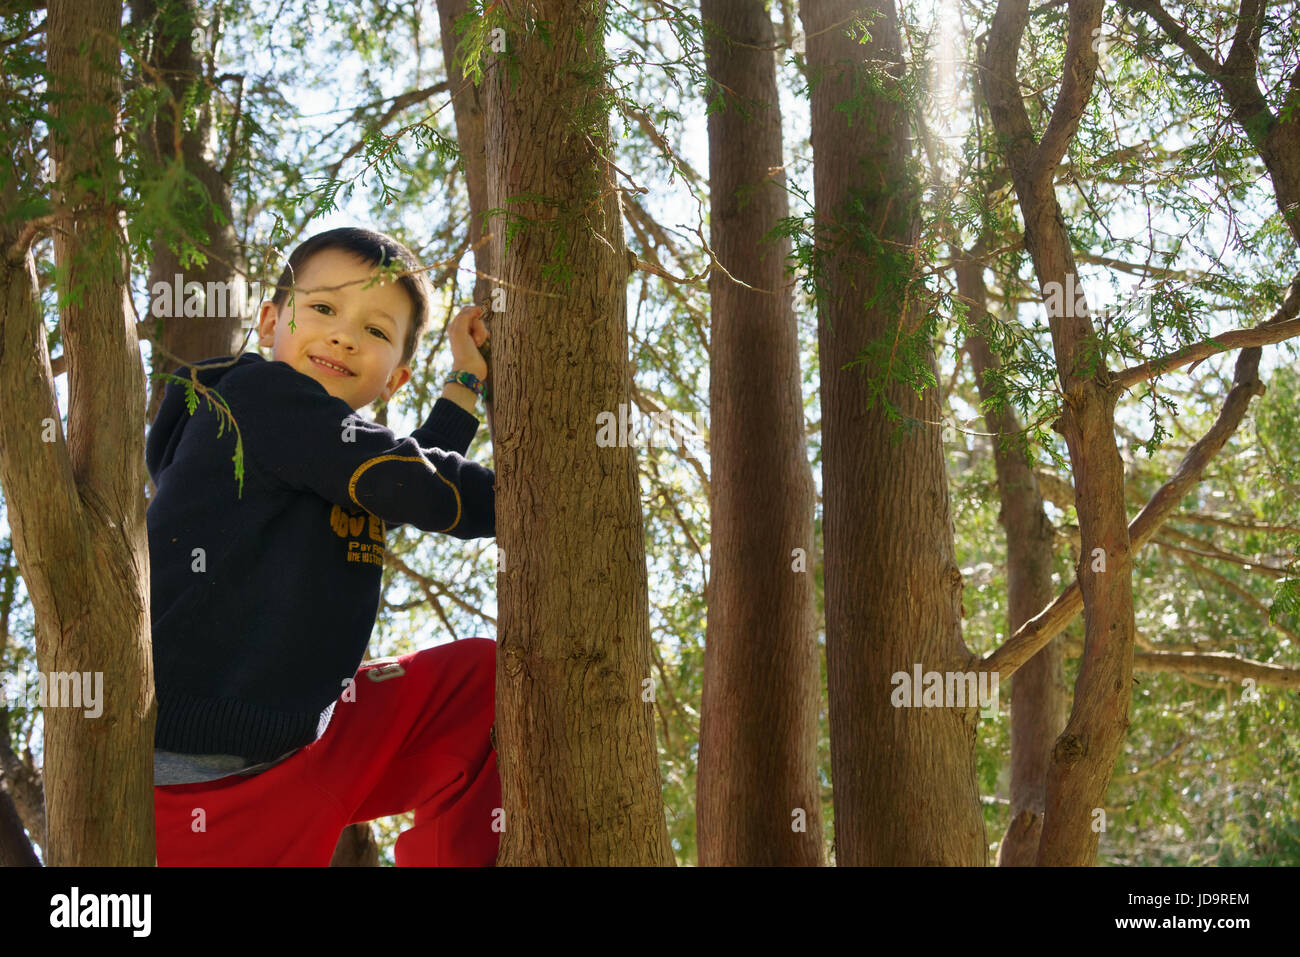 Smiling Young boy climbing tree en extérieur avec du soleil à travers les arbres. Banque D'Images